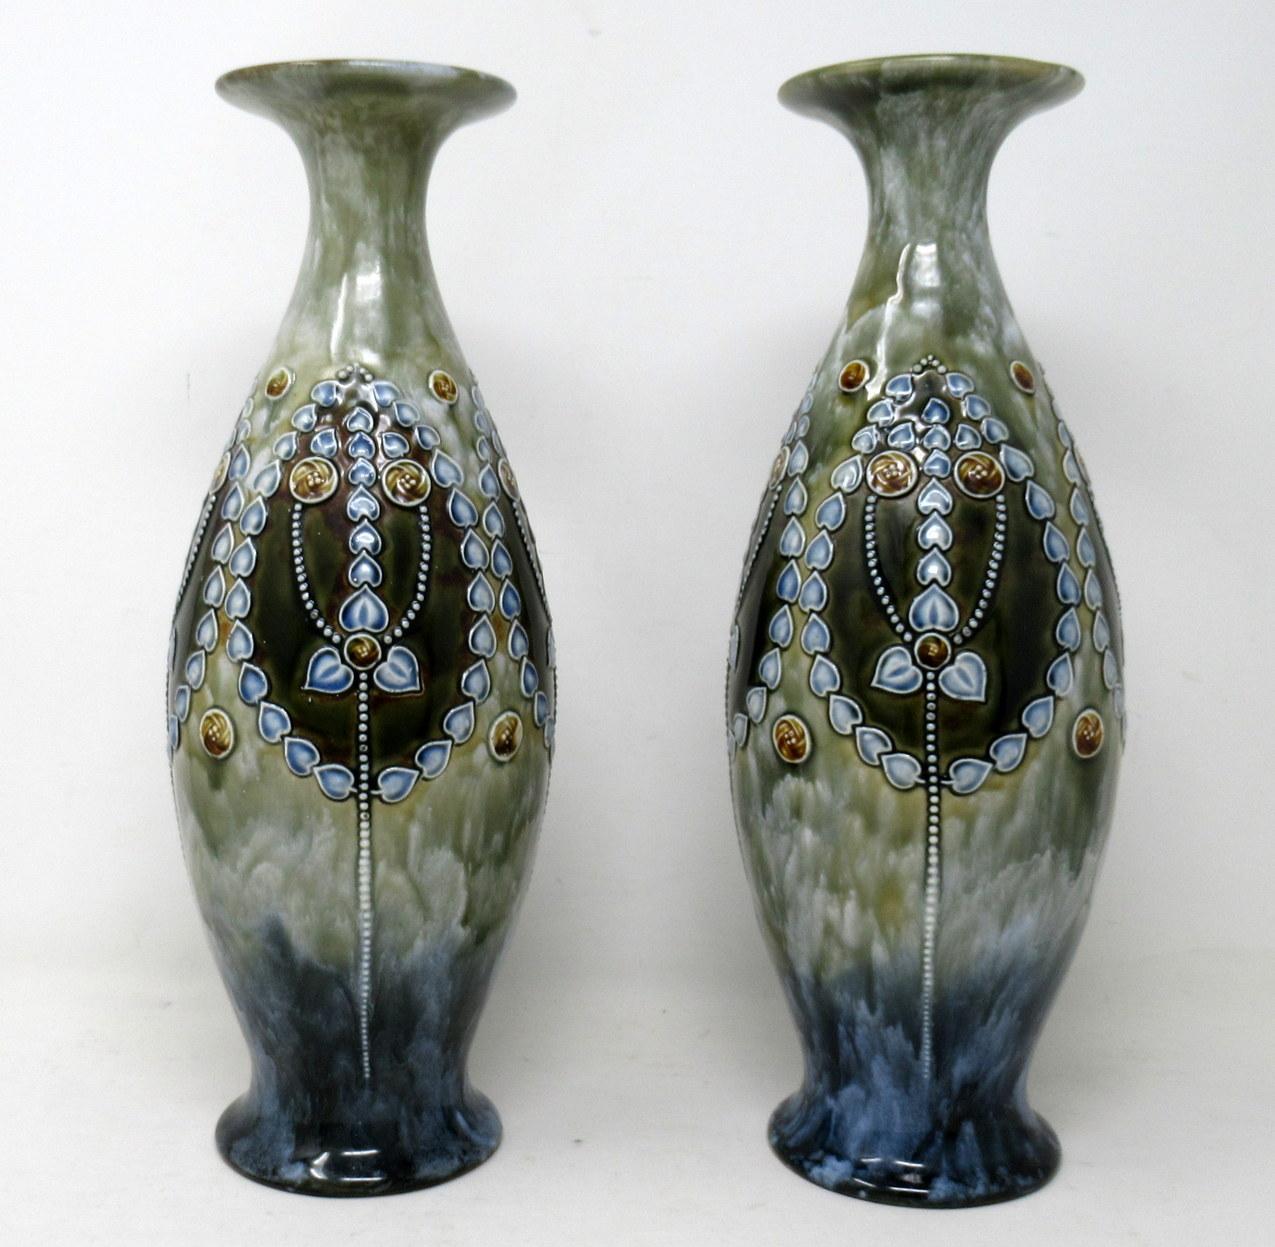 Ein sehr stilvolles identisches Paar englischer Royal Doulton Lambeth Moulded Salt-Glaze Steingut Keramik Langhals Mantel Vasen von großzügigen Proportionen. 

Jeweils bauchige Form mit flachen, gebogenen Rändern. Aufwändiger Jugendstildekor aus